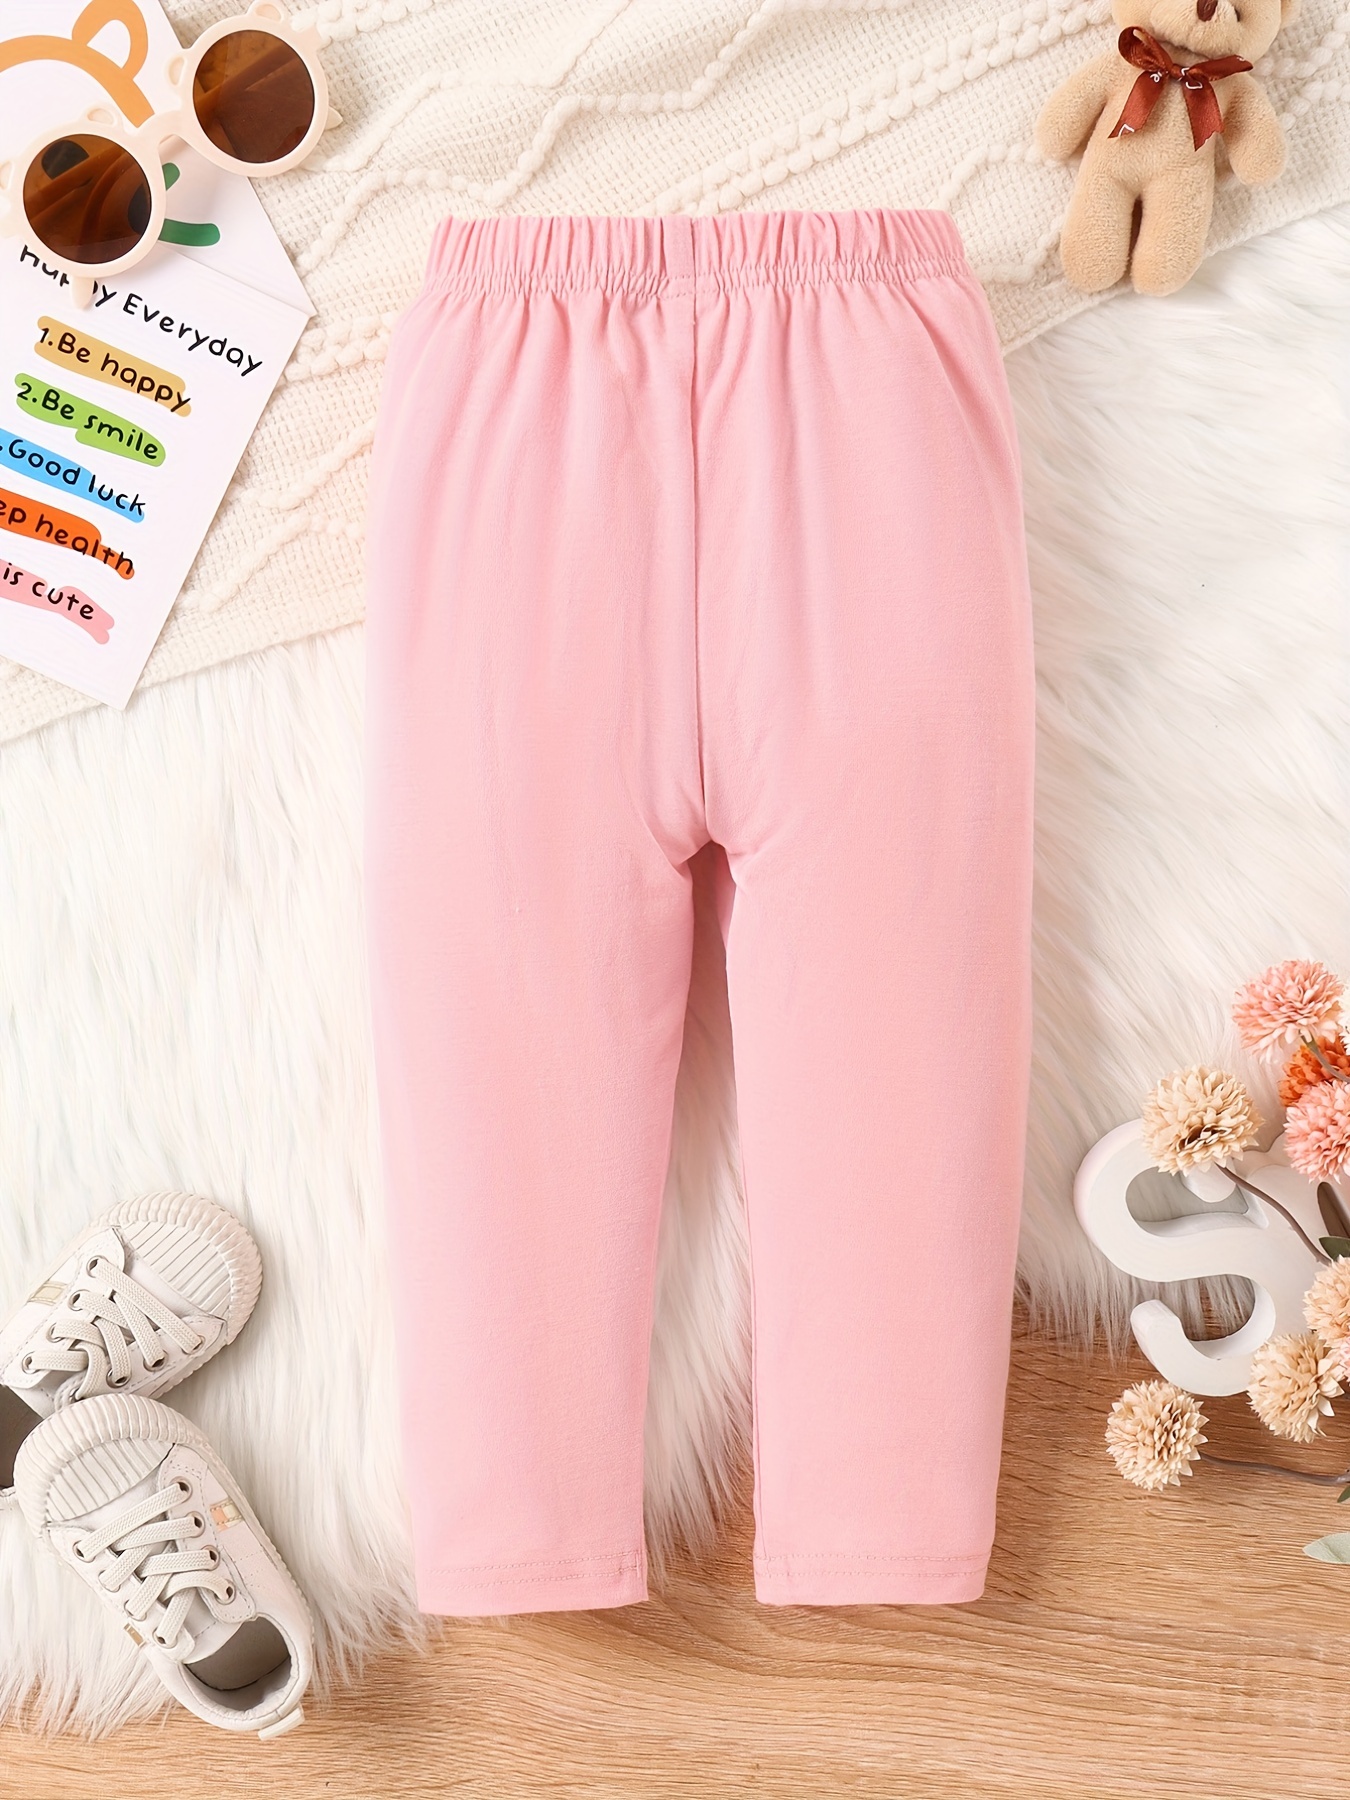 3 Piece Girls Pink pants suit